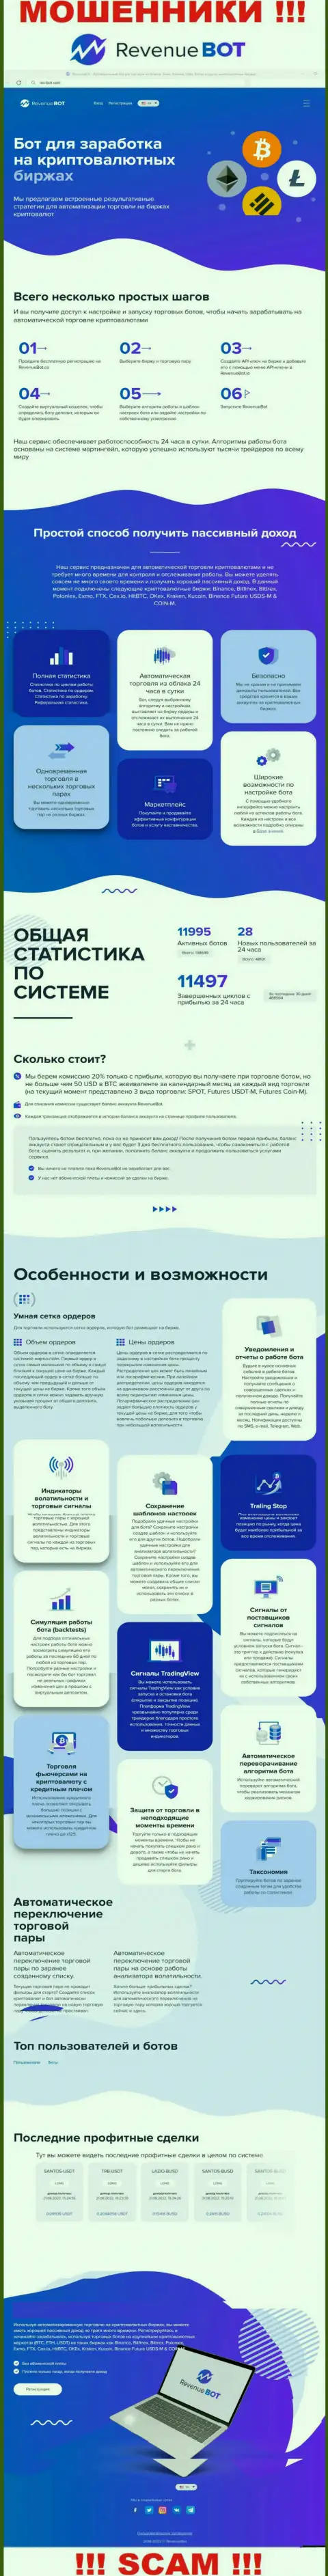 Рев-Бот Ком - это официальный информационный сервис мошенников Ревенью БОТ